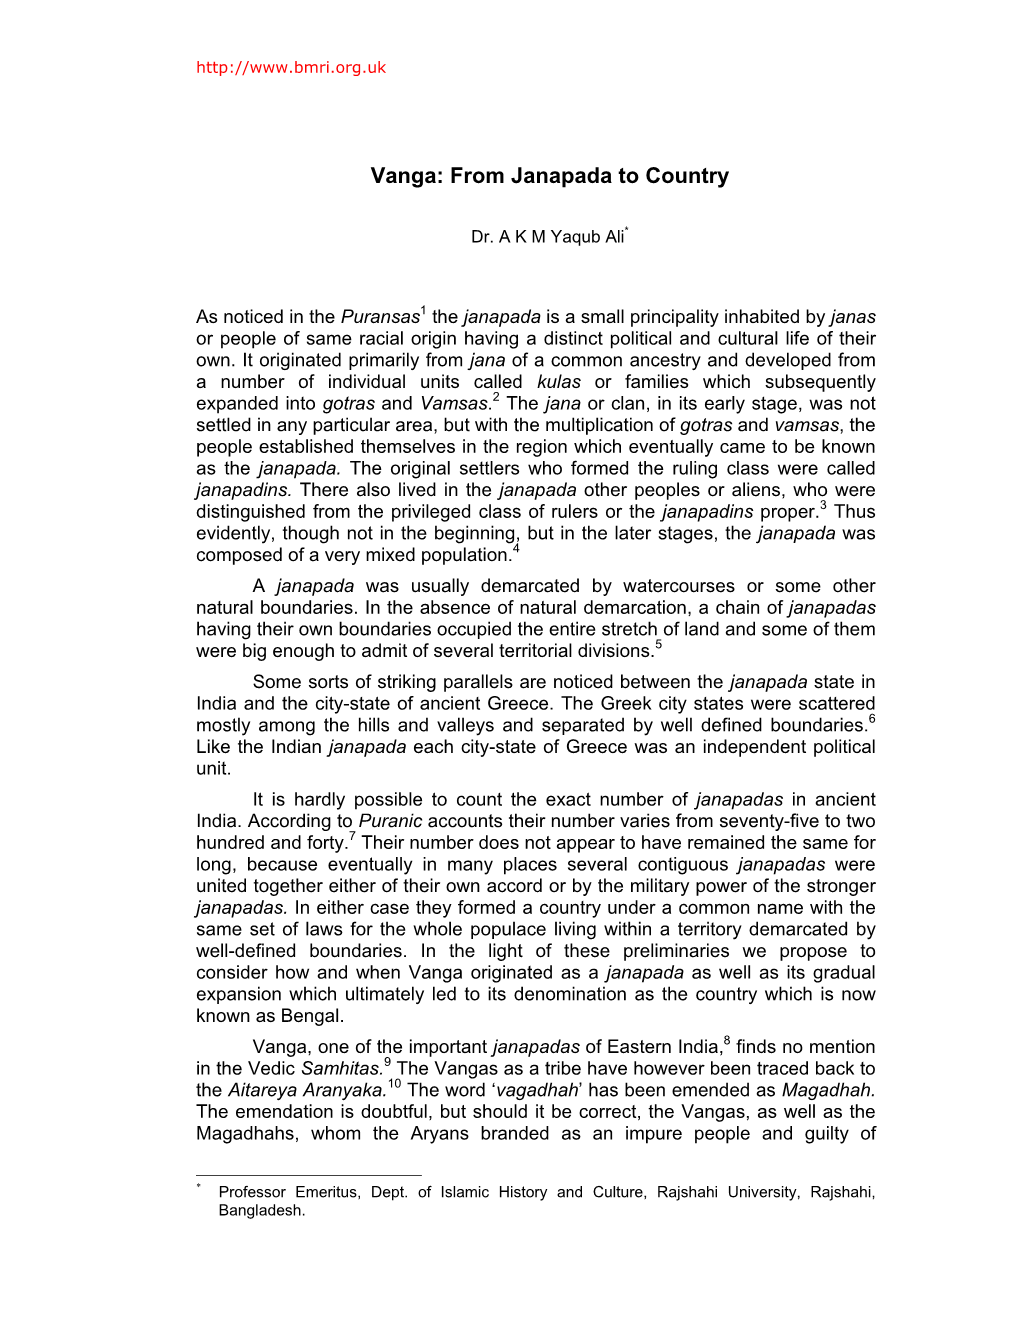 Vanga: from Janapada to Country